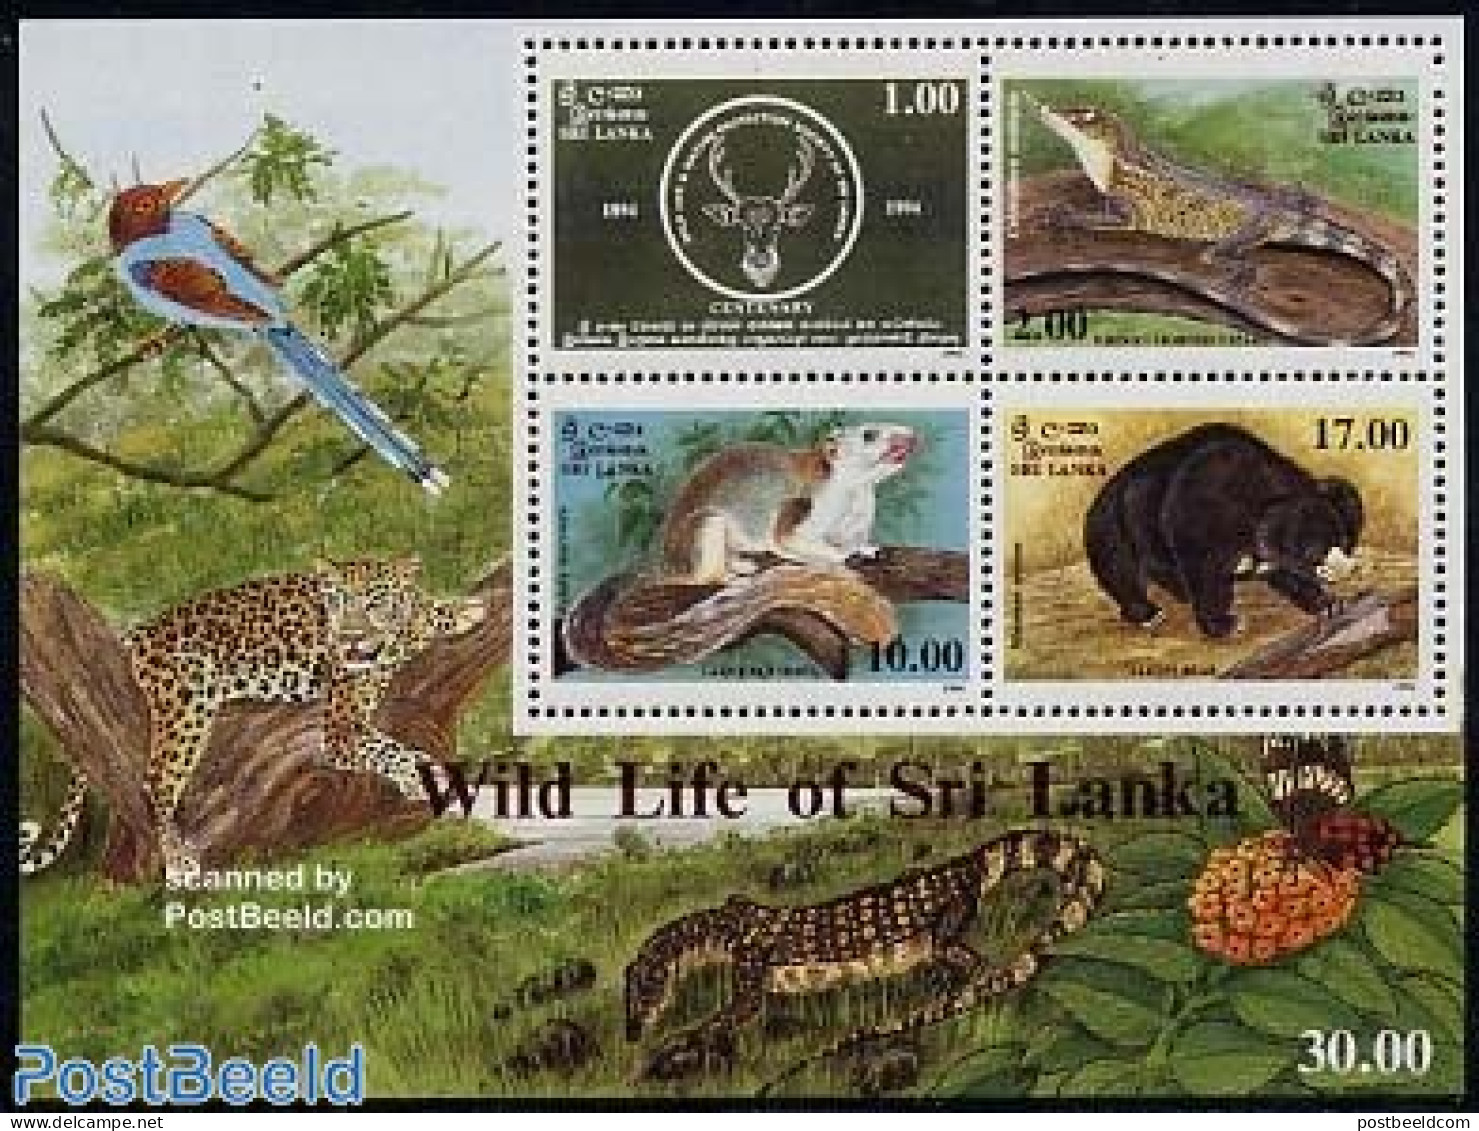 Sri Lanka (Ceylon) 1994 Animal Protection S/s, Mint NH, Nature - Animals (others & Mixed) - Bears - Reptiles - Sri Lanka (Ceylan) (1948-...)